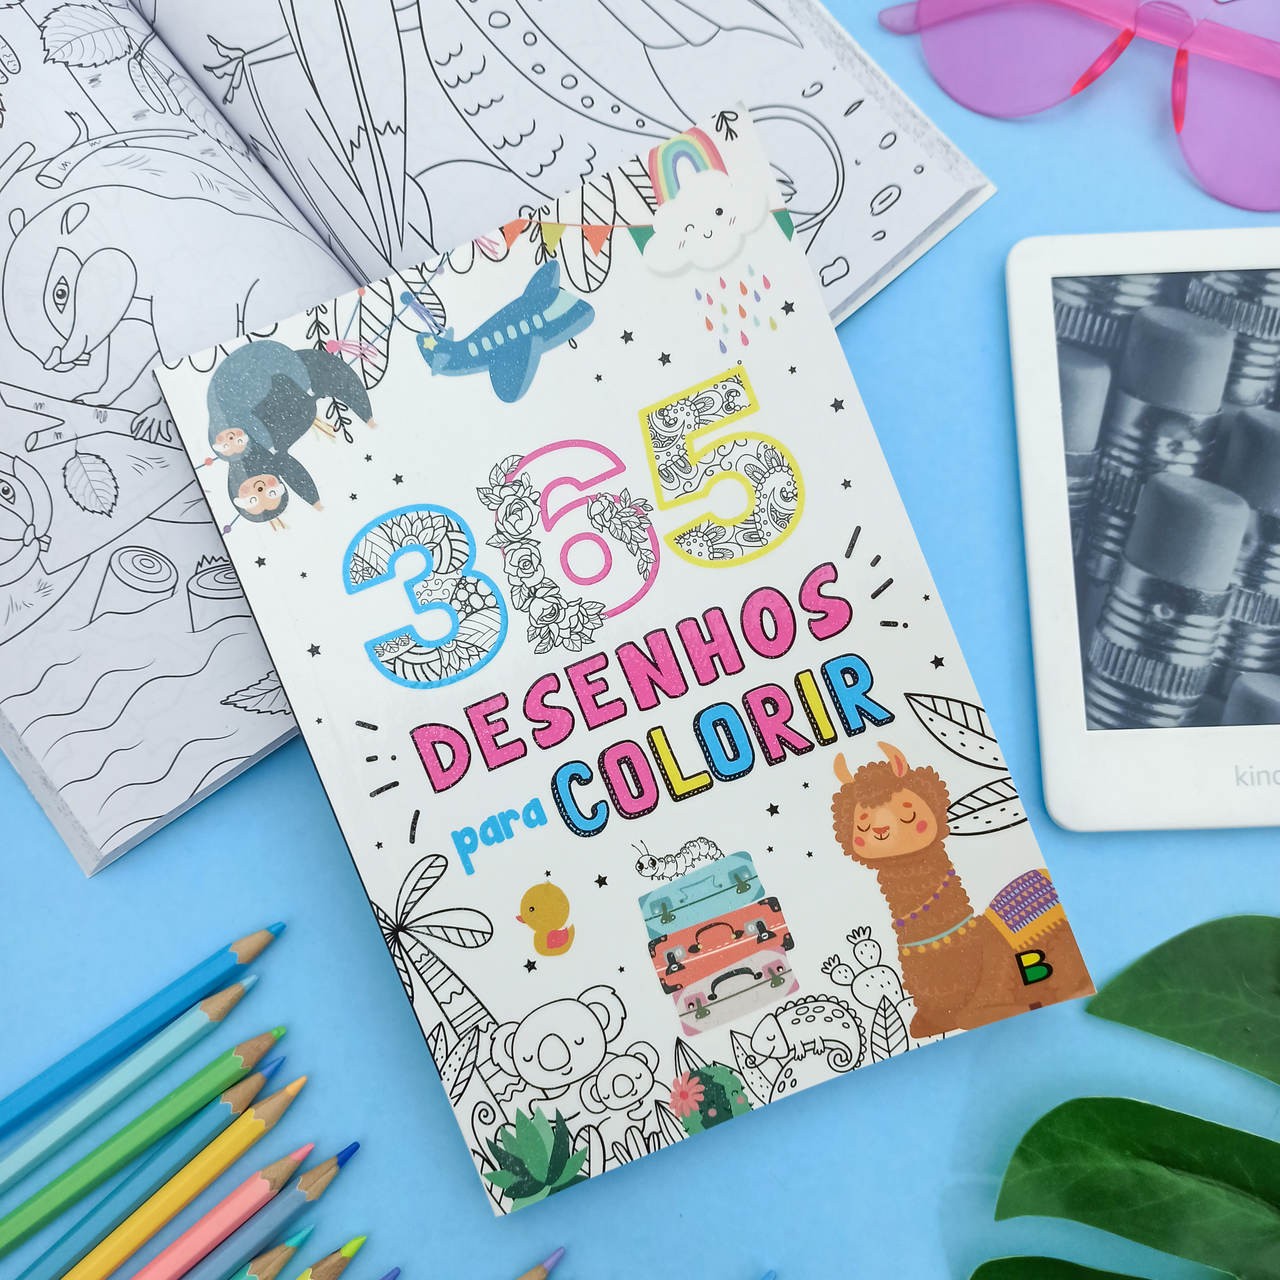 Livro 365 Desenhos para Colorir Brasileitura - Padihey